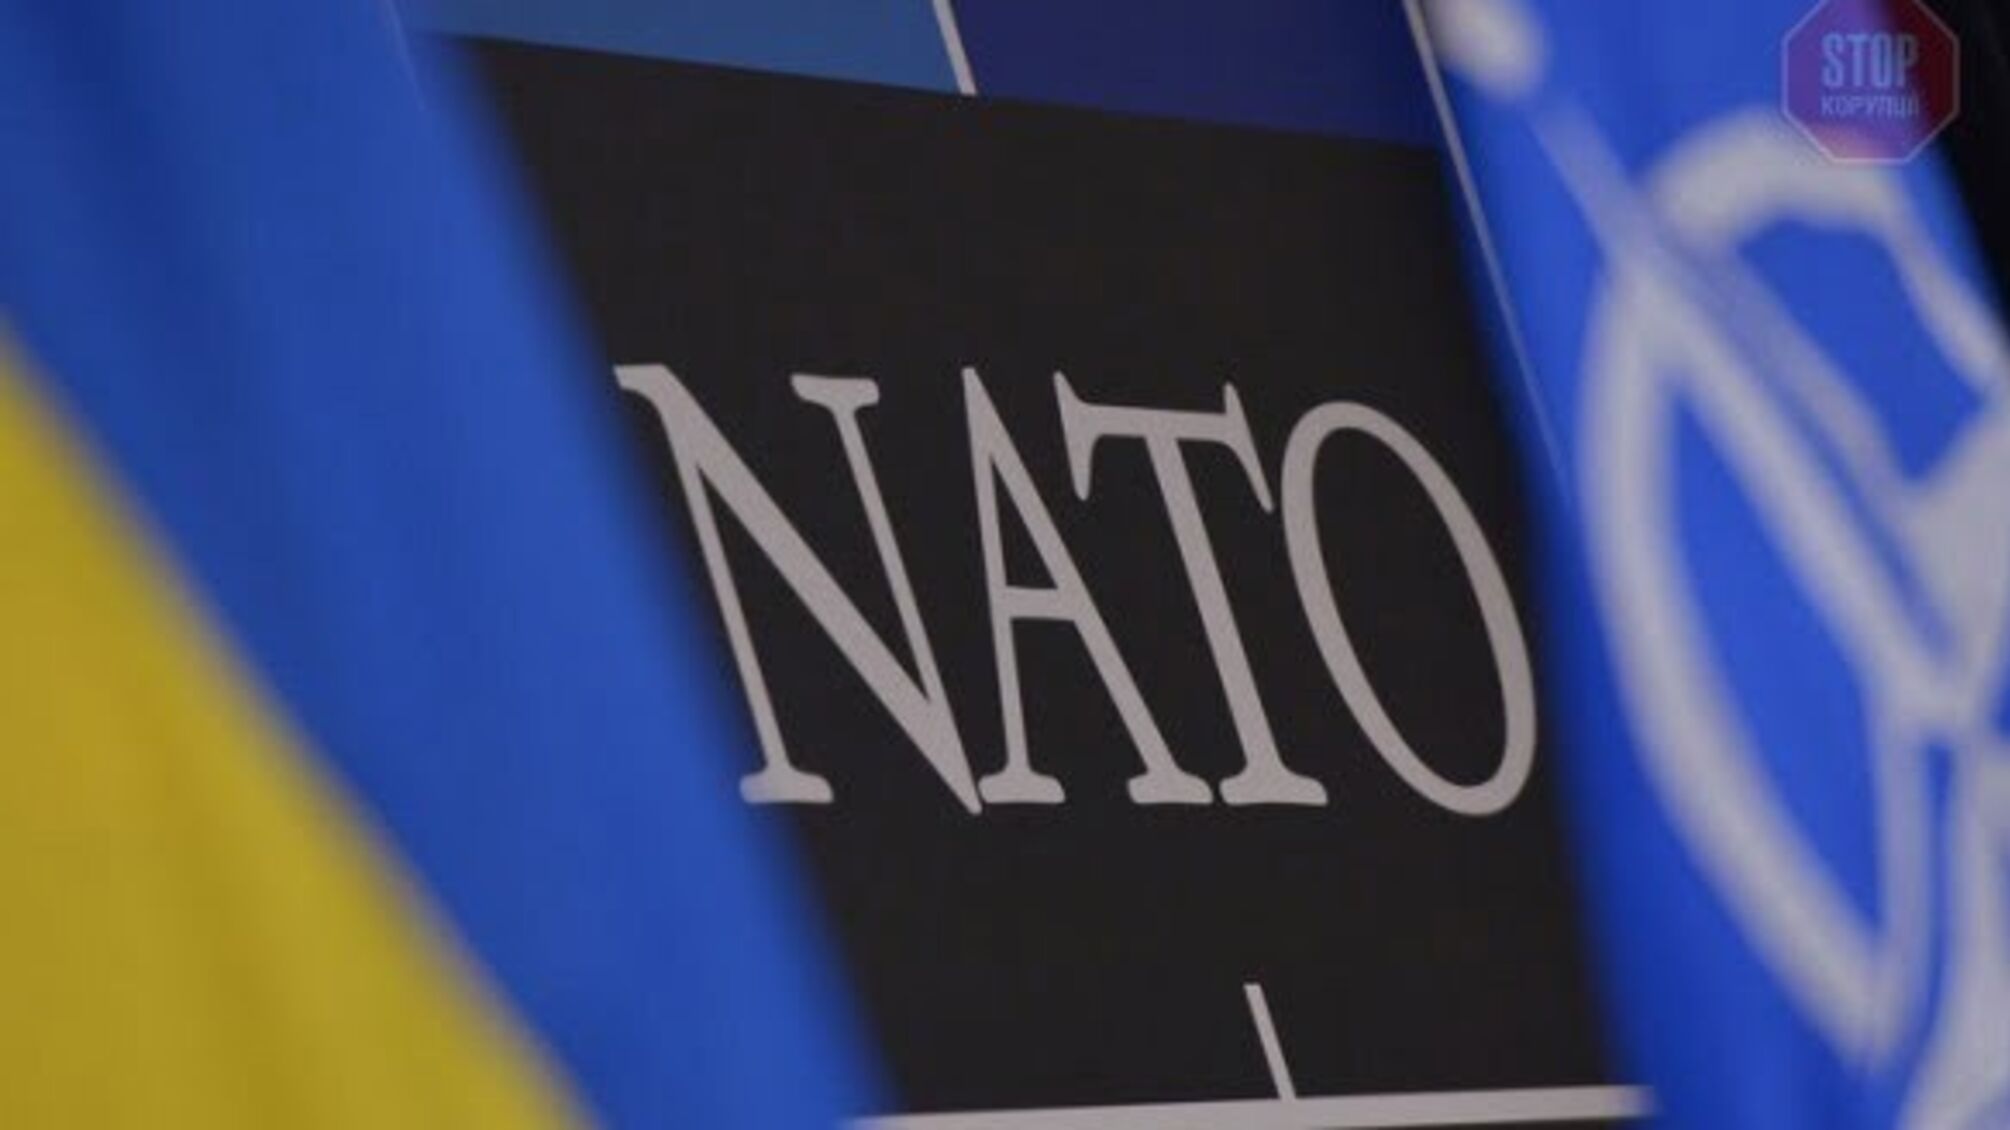 Парламентарі ухвалили проєкт постанови щодо надання Україні плану дій по членству в НАТО